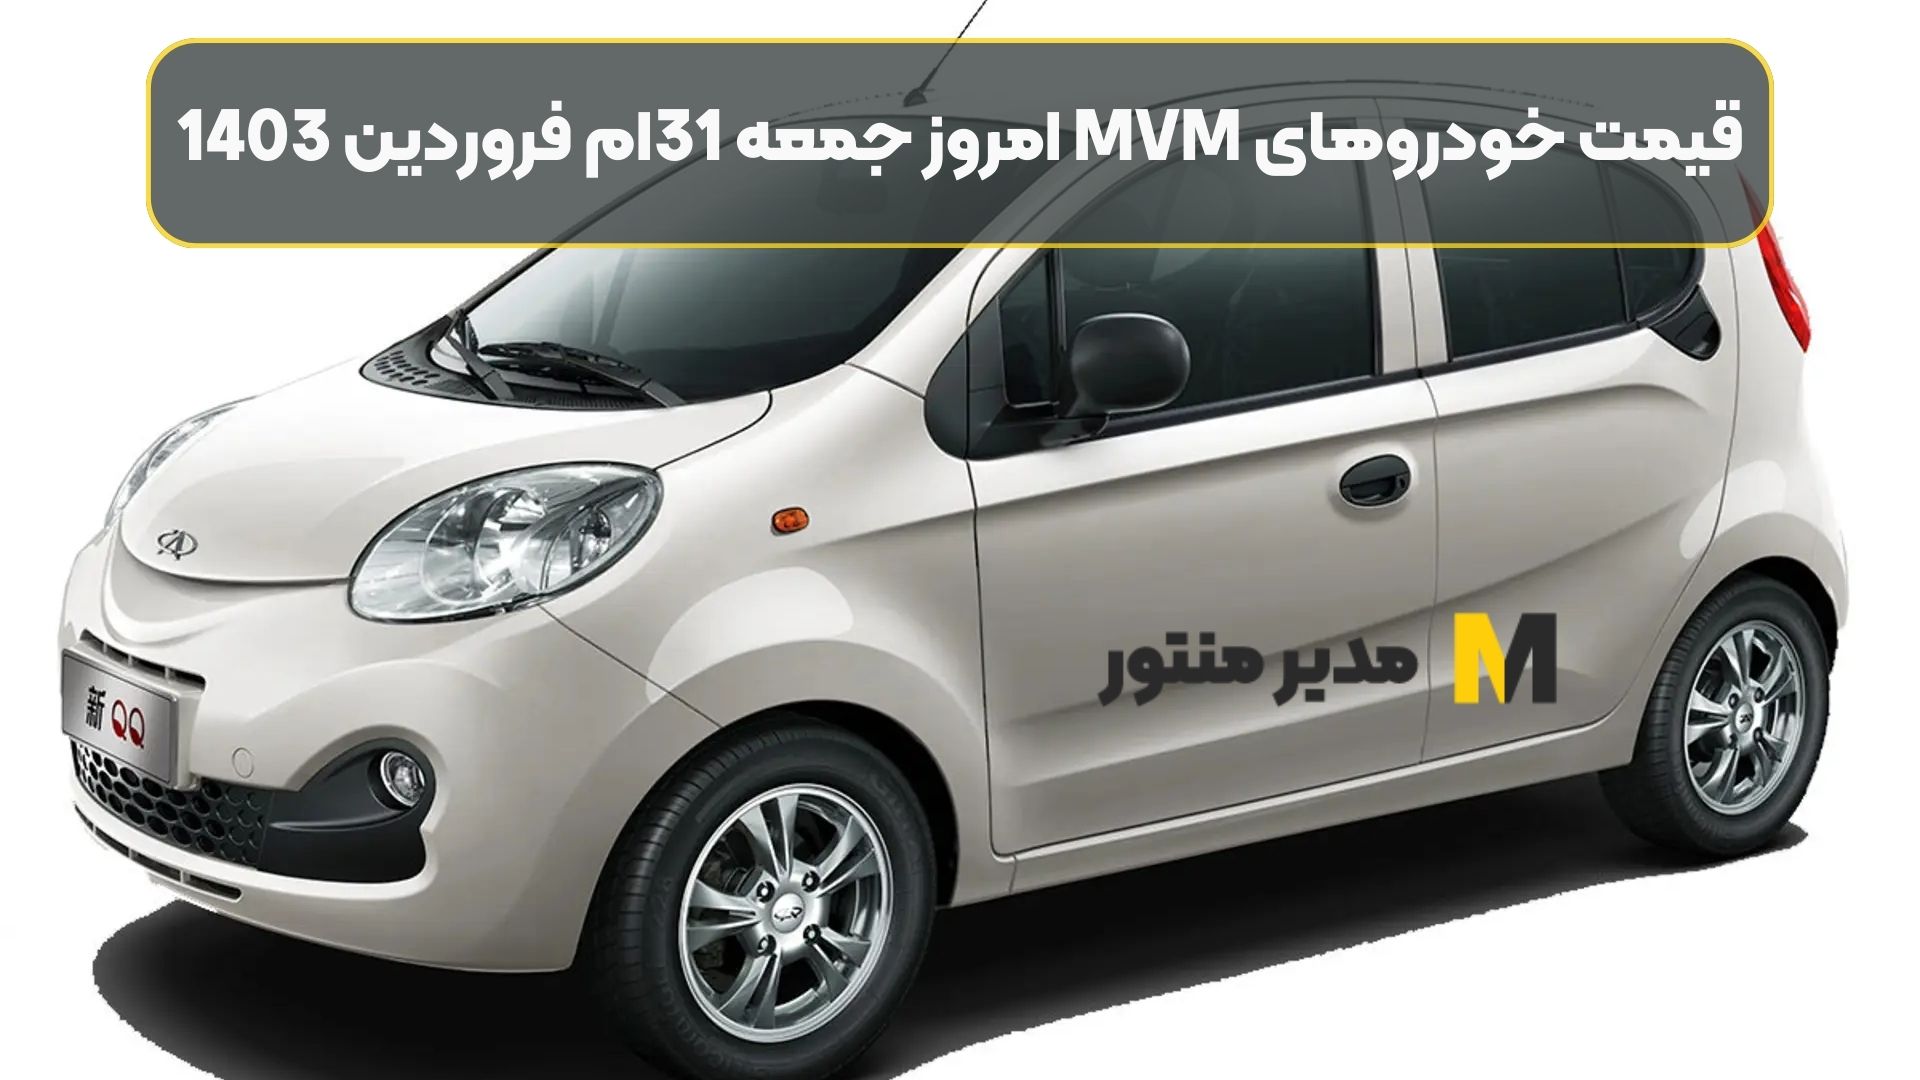 قیمت خودروهای MVM امروز جمعه 31ام فروردین 1403